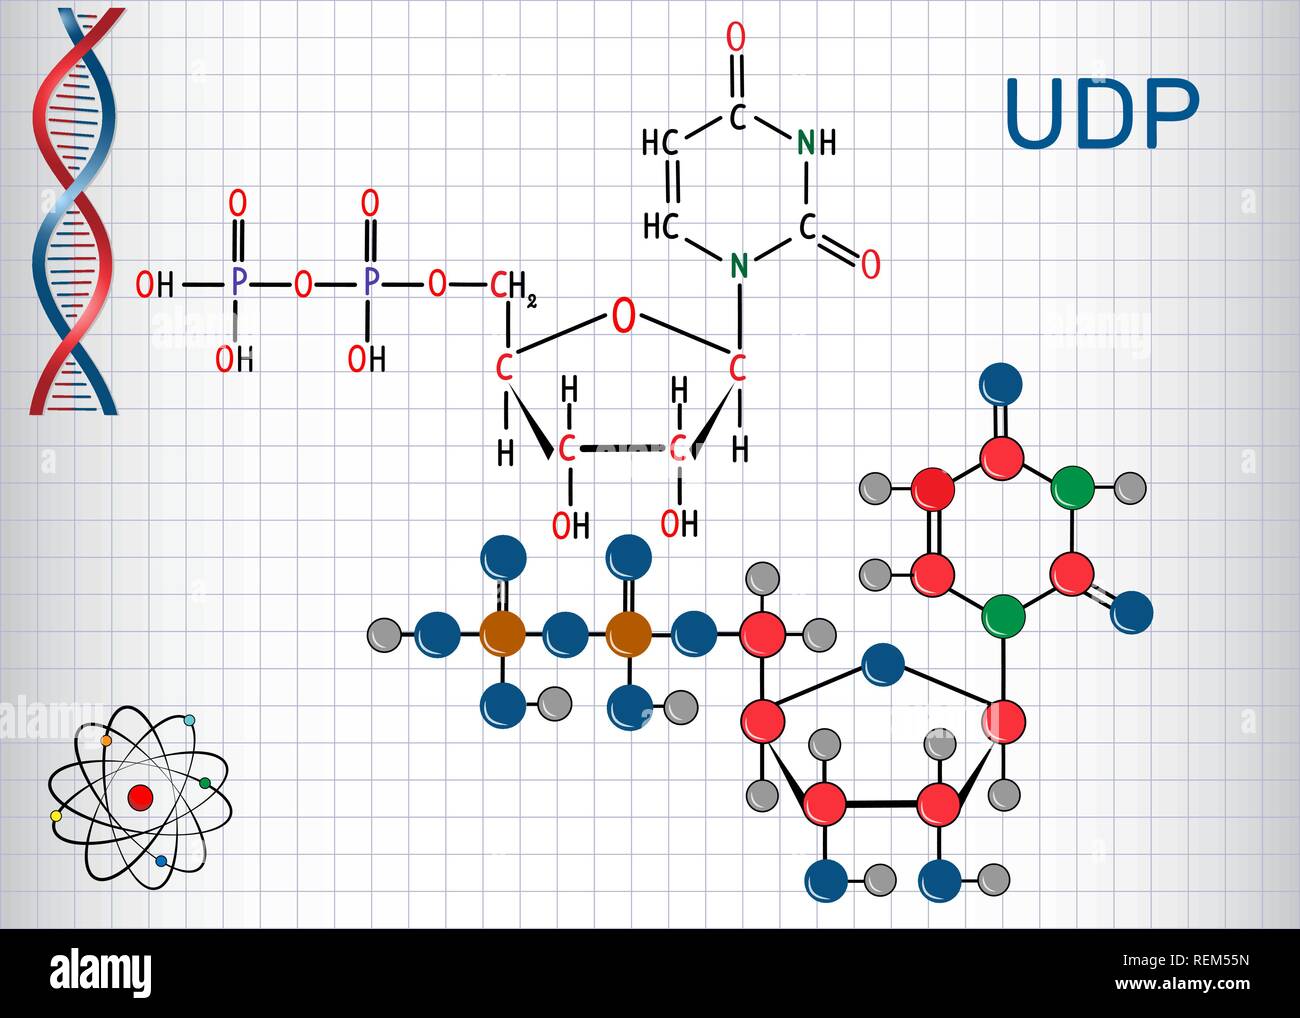 L'uridine diphosphate (UDP) molécule de nucléotides. Formule chimique structurale et molécule modèle. Feuille de papier dans une cage.Vector illustration Illustration de Vecteur